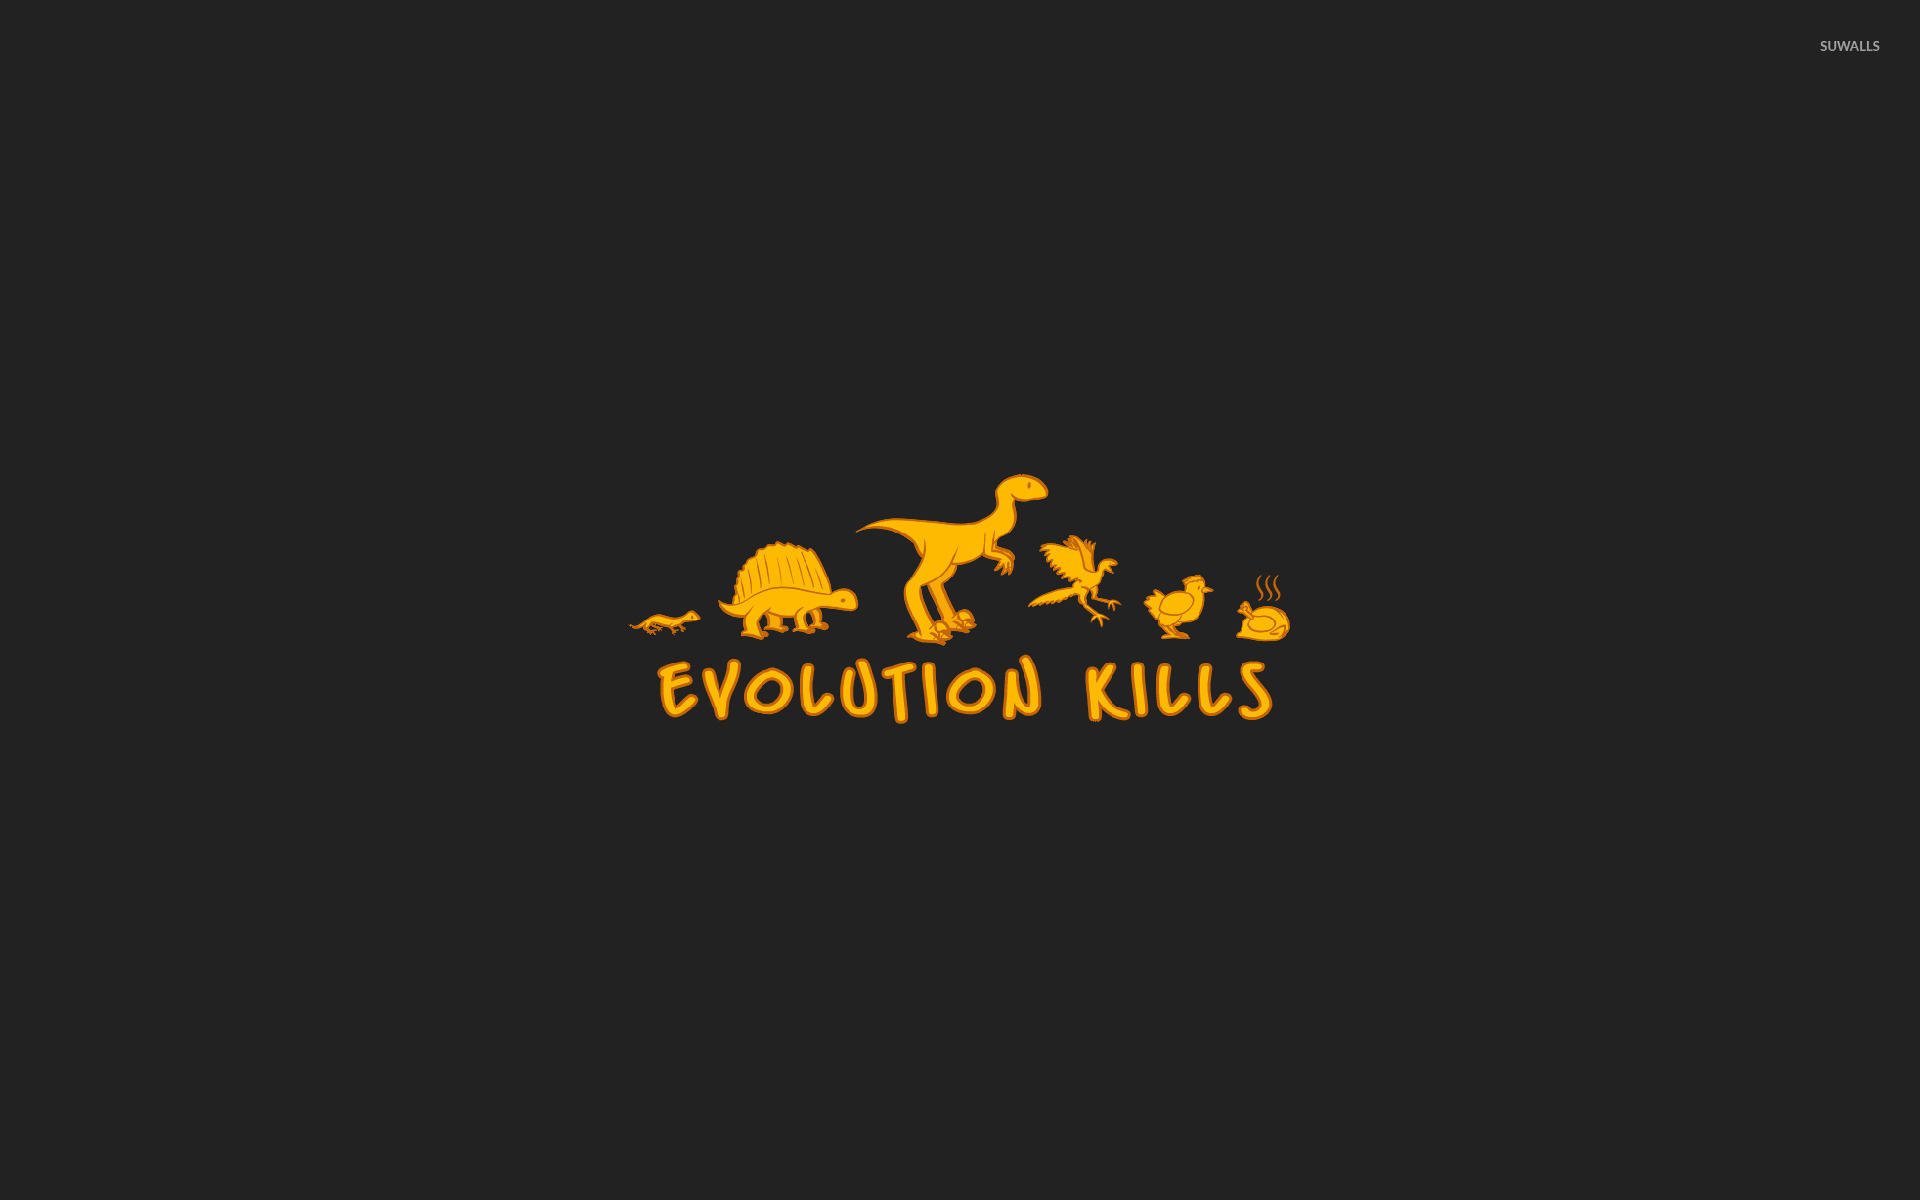 Evolution kills wallpaper   Funny wallpapers   15322